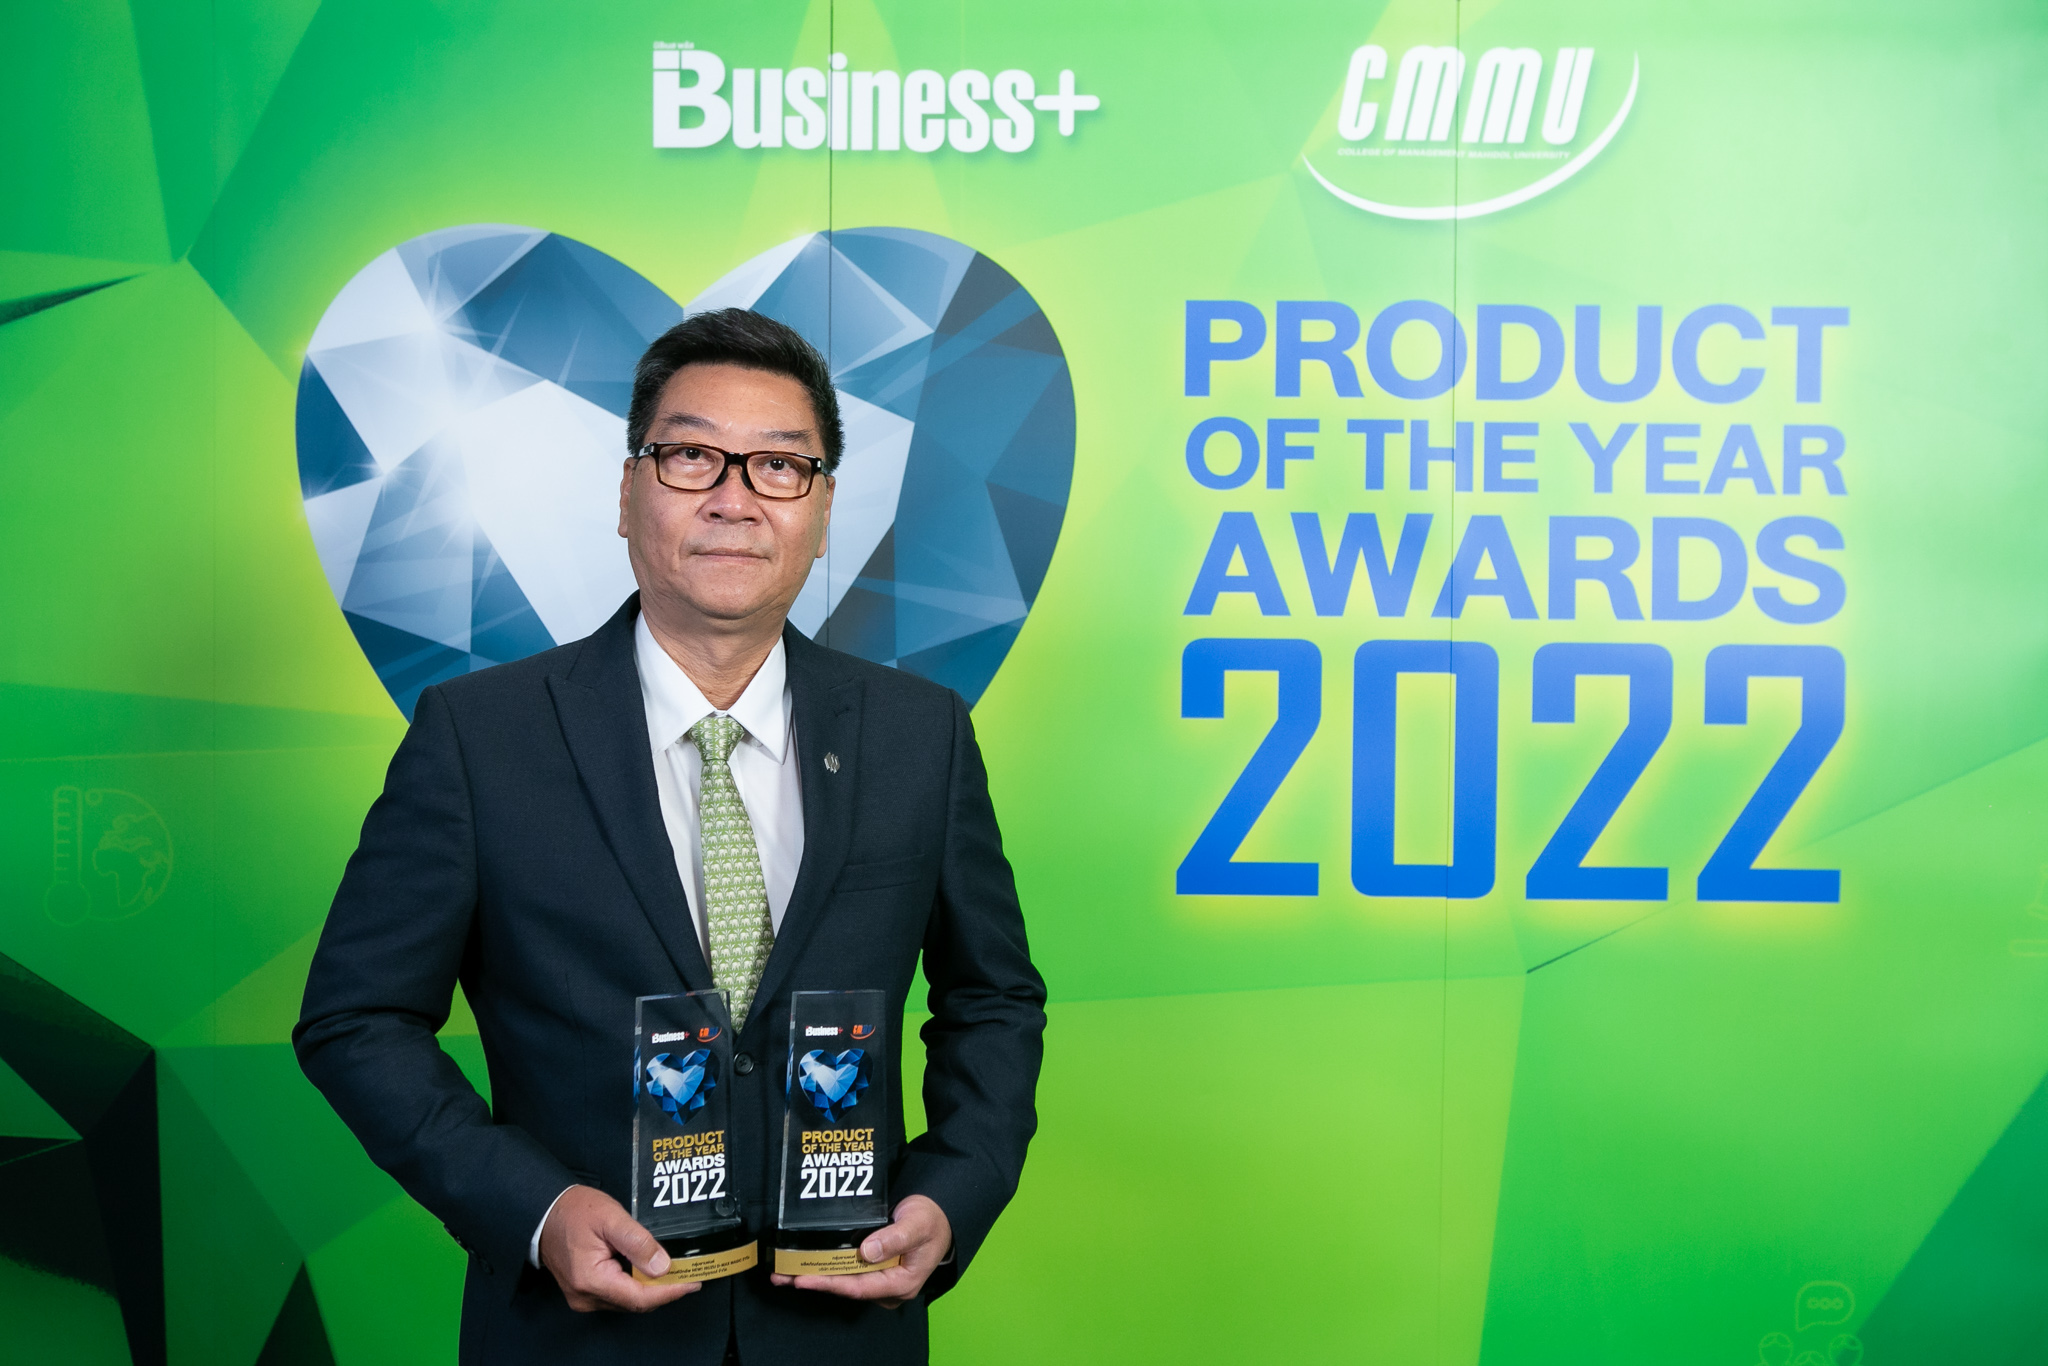 อีซูซุคว้ารางวัลเกียรติยศ Business Product of the Year Awards 2022 (1)